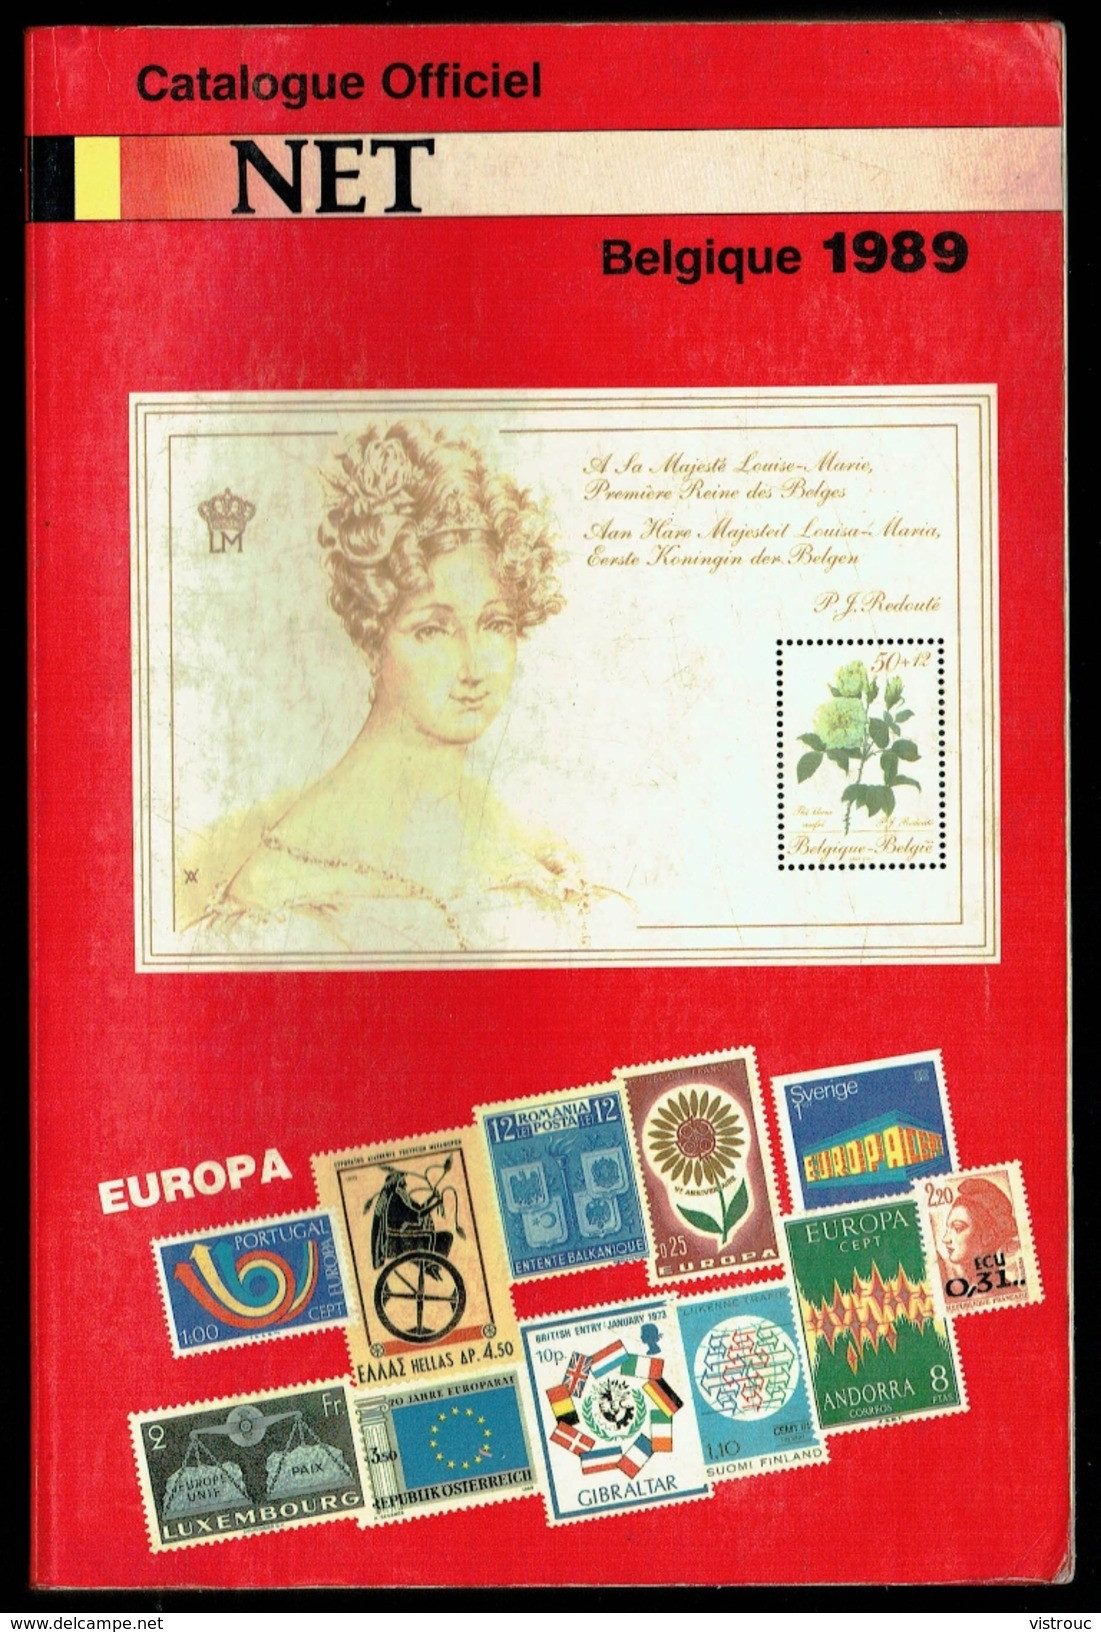 Catalogue Officiel NET (FR) 1989 - Timbres De Belgique. - België